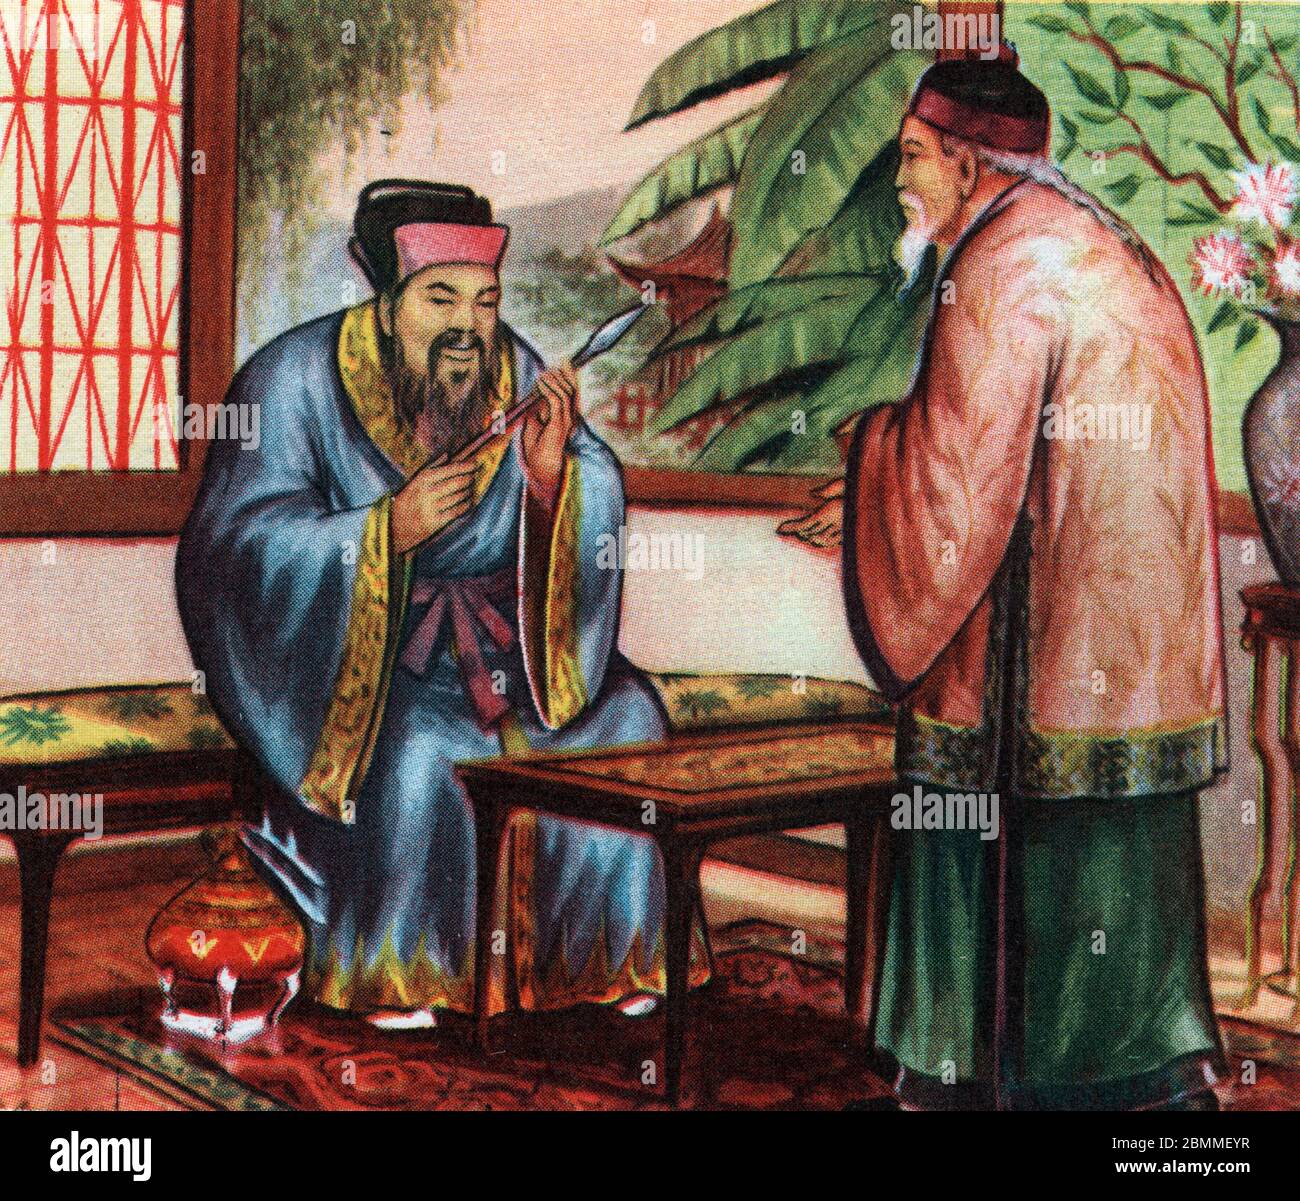 Le philosophe chinois Confucius (ou Kong Fu Zi ou KongZi) (551-479 avant JC), consulte pour ses connaissances des civilisations disparues - Confucius Stock Photo